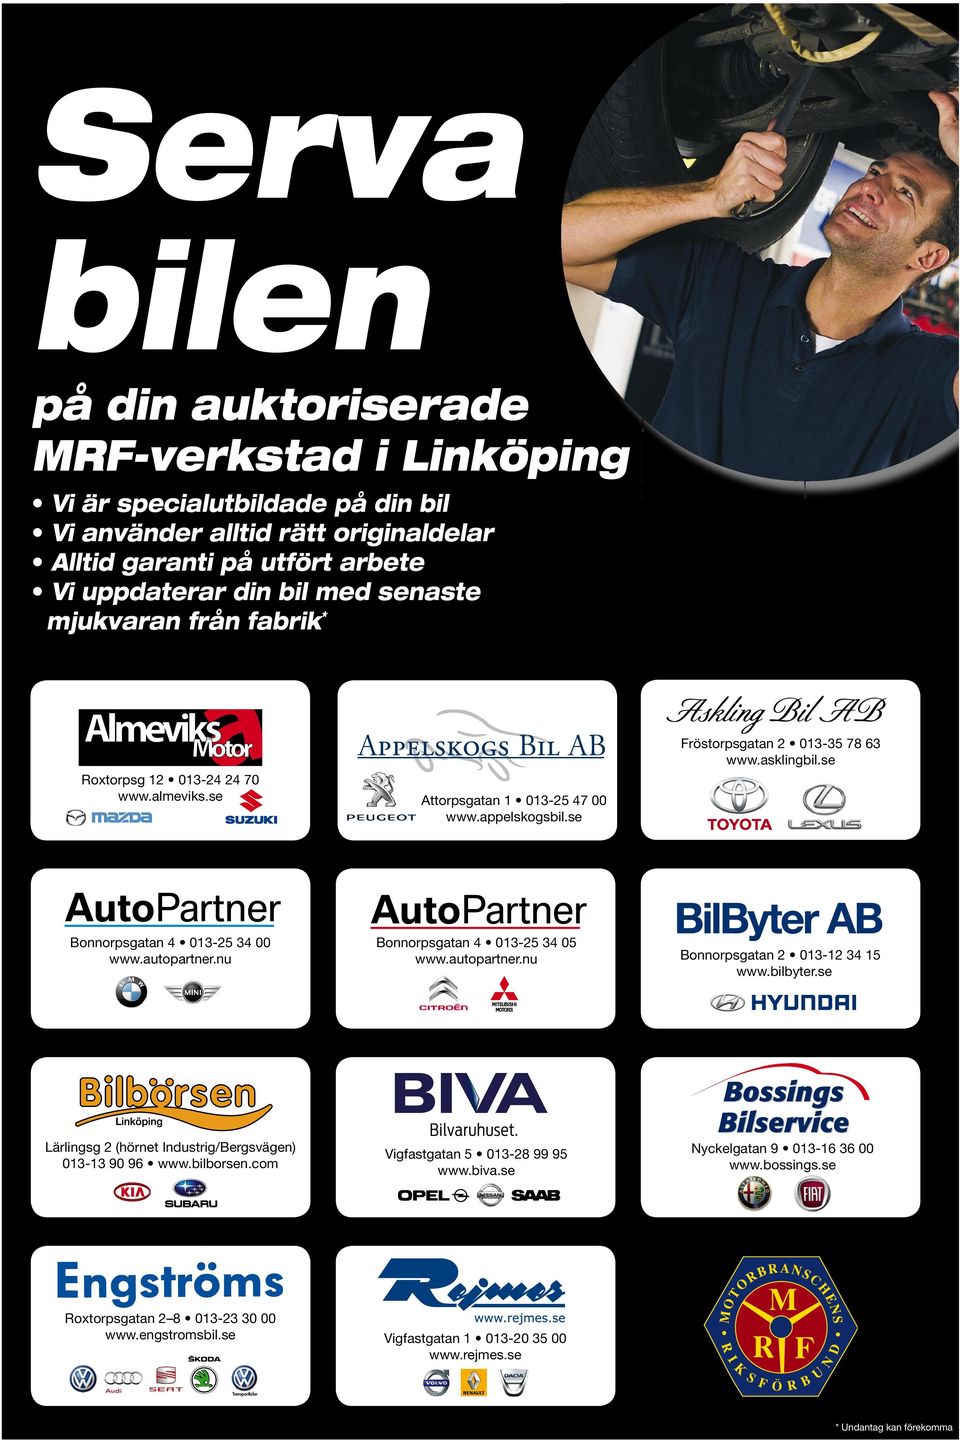 se www.appelskogsbil.se www.asklingbil.se www.autopartner.nu www.autopartner.nu www.bilbyter.